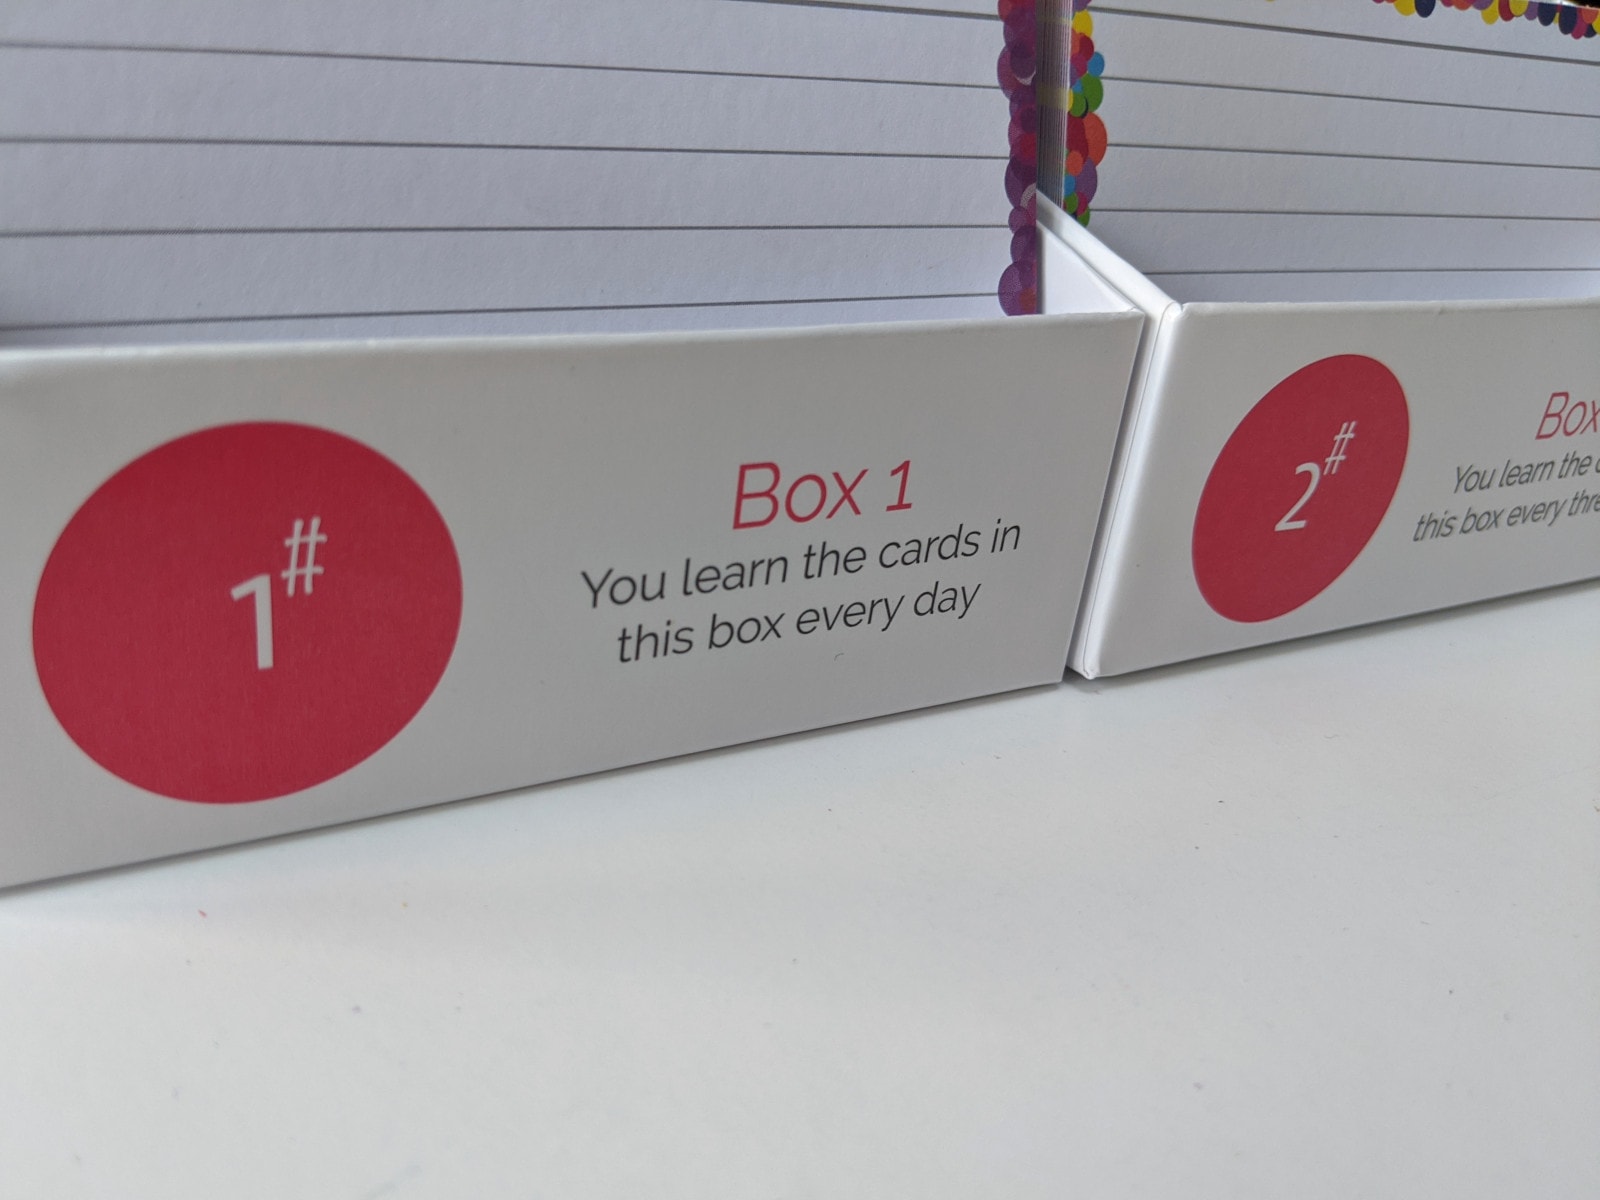 Exambundle 1000 flashcards + Leitner Boxes - Flashcards and Stationery